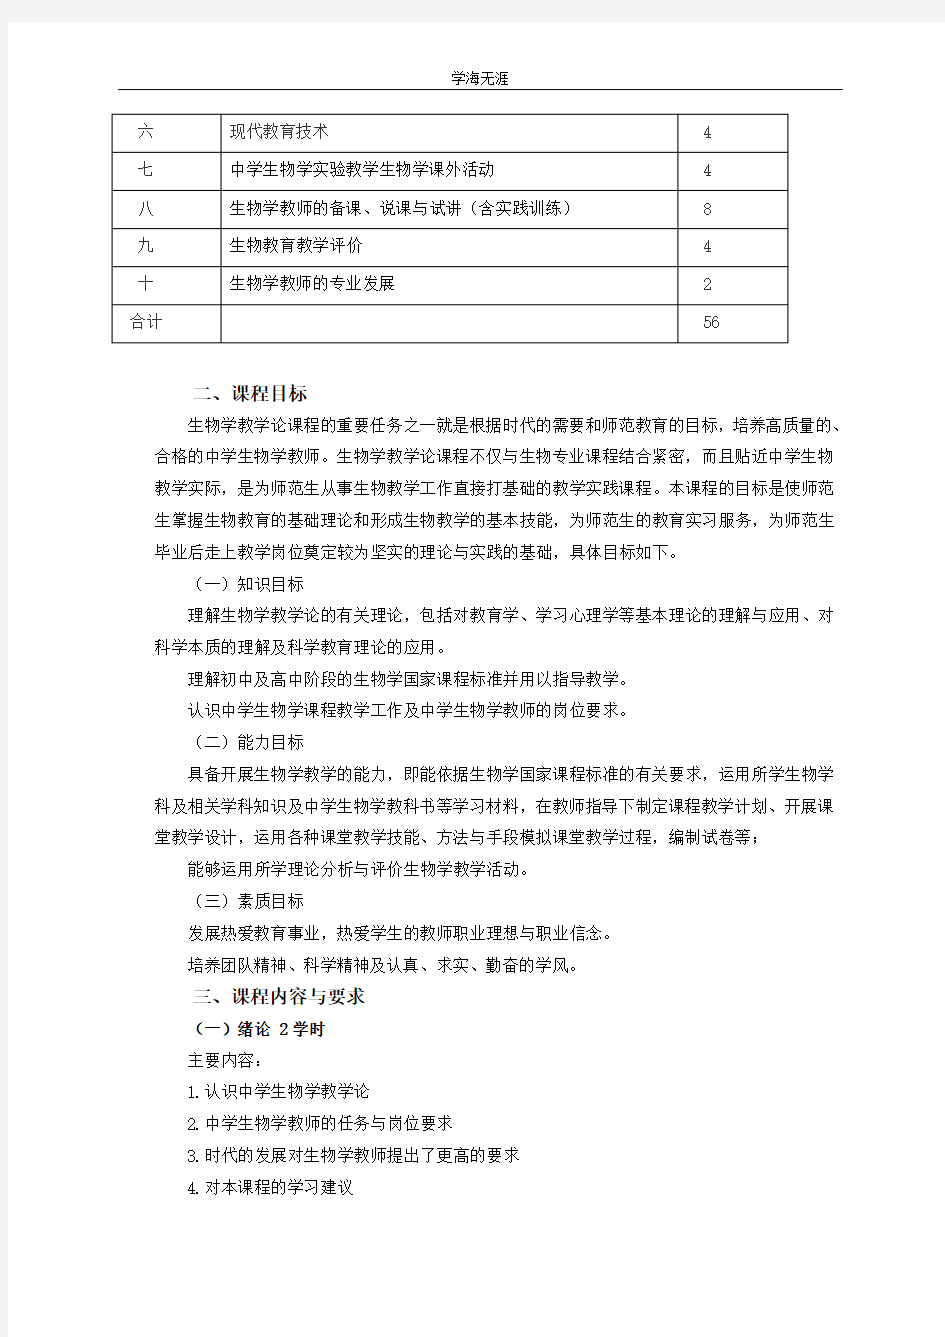 生物学教学论课程大纲  南京晓庄学院(4月5日).pdf